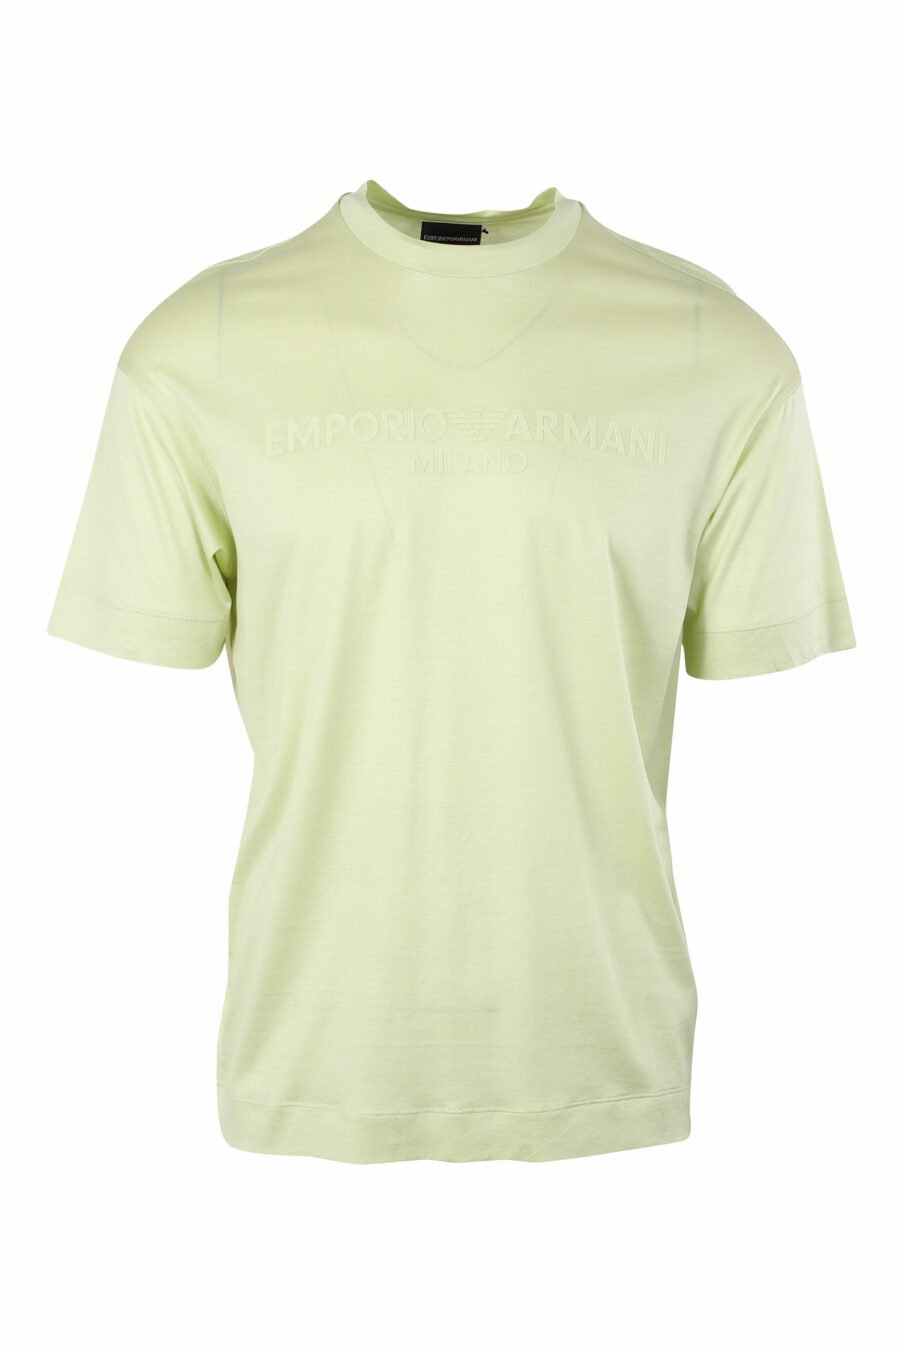 T-shirt verde com maxilogo centrado - IMG 9629